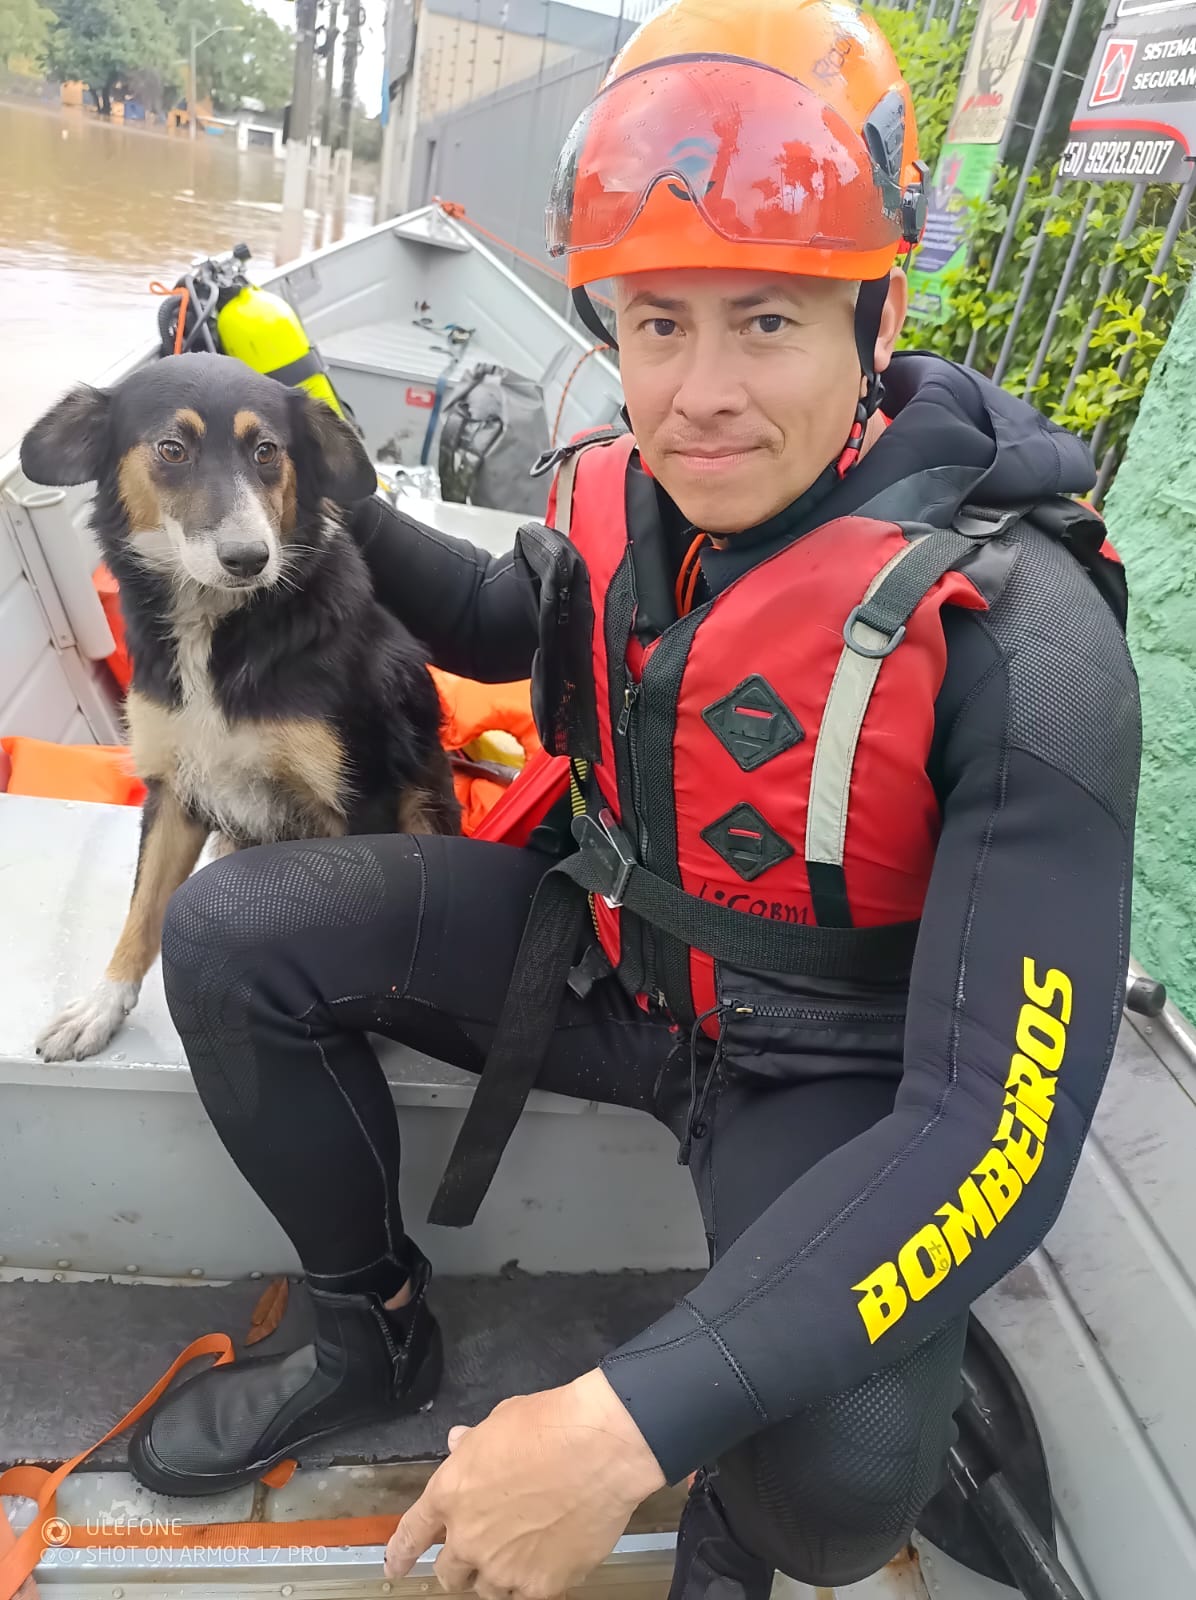 Equipes de MS já resgataram mais de 900 pessoas e 200 animais no Rio Grande do Sul